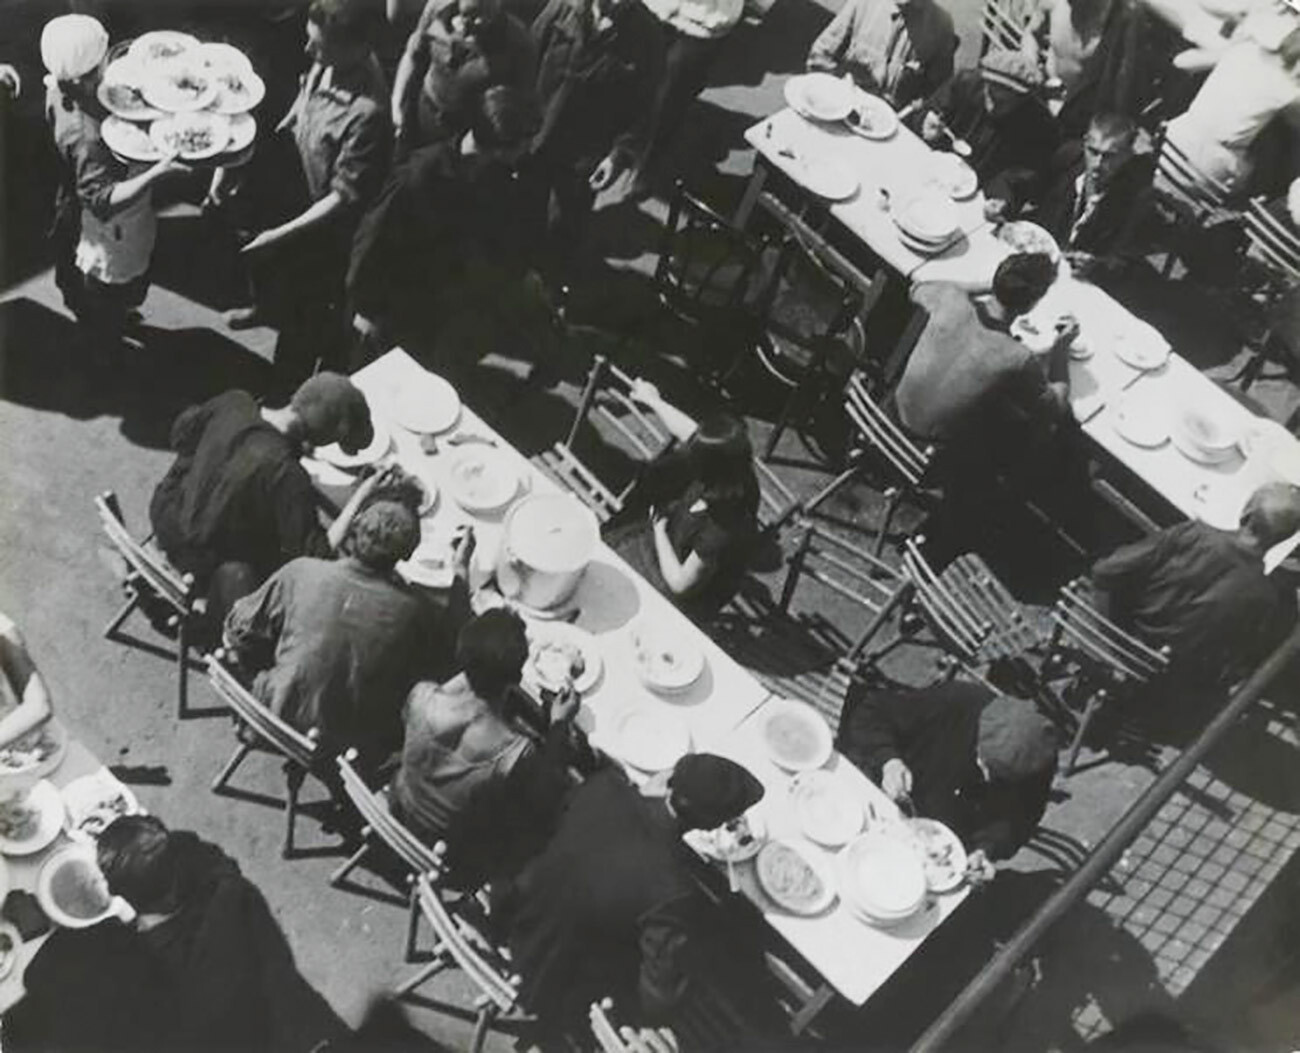 Обед на фабрике-кухне. Суп обычно ставили на стол в кастрюле, рассчитанной на нескольких рабочих.